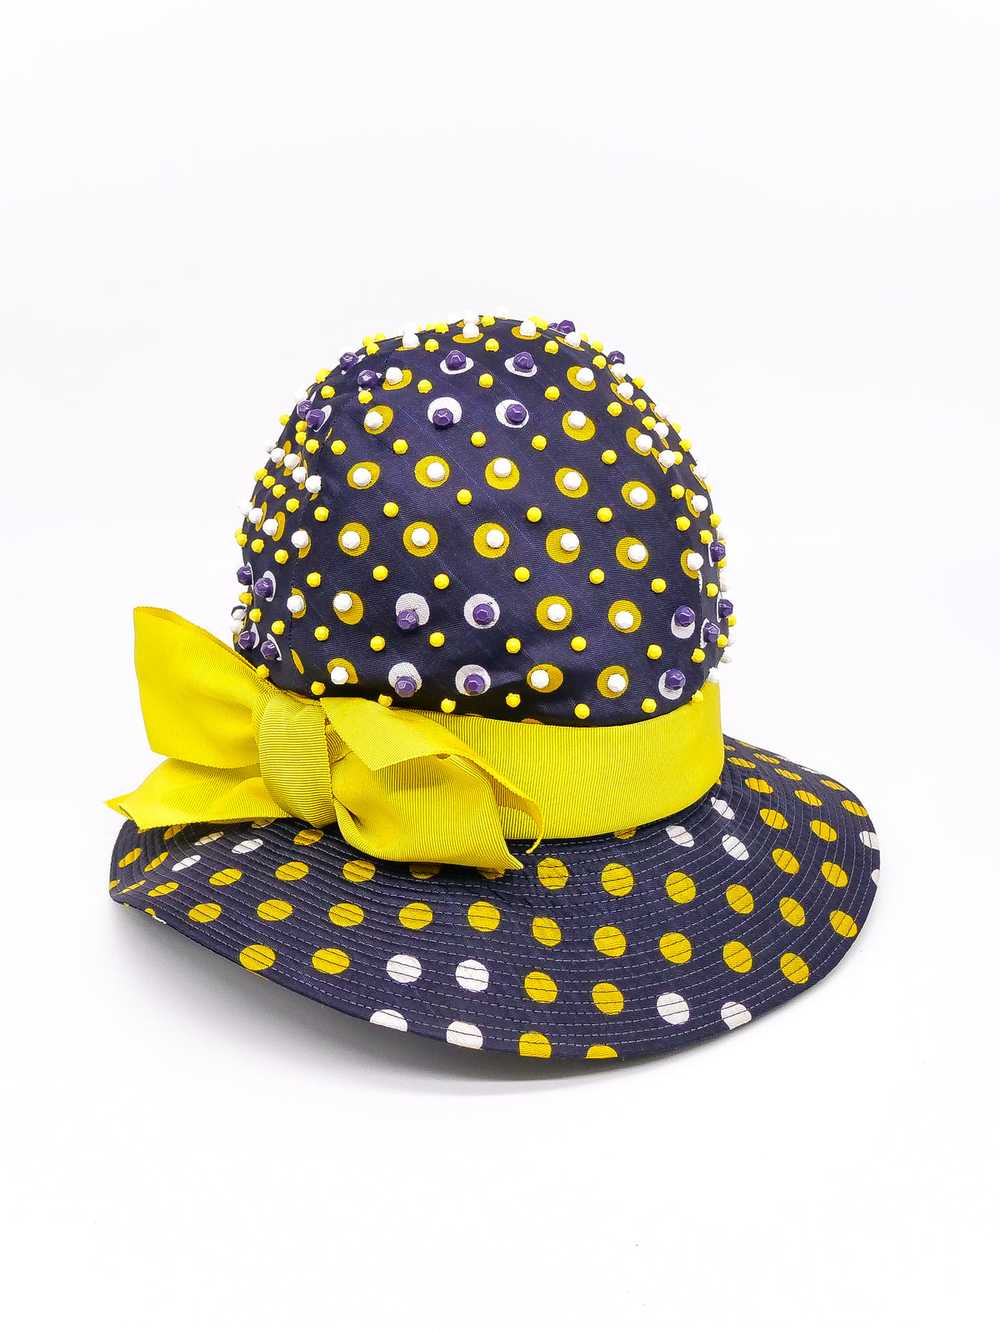 1960's Bead Embellished Polka Dot Hat - image 3